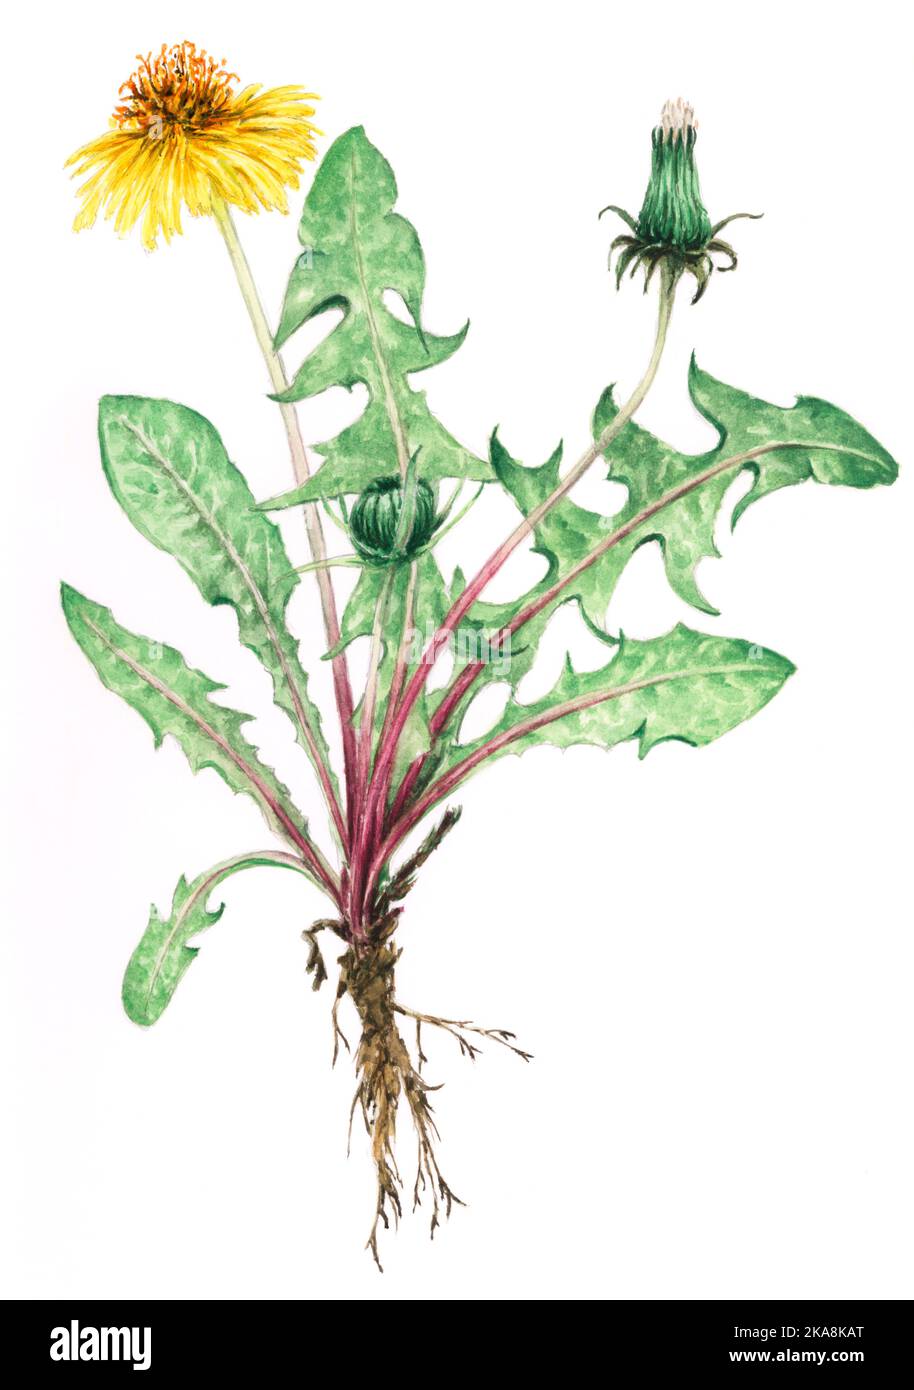 Plante de pissenlit (Taraxacum officinale) dessin botanique. Aquarelle sur papier. Banque D'Images